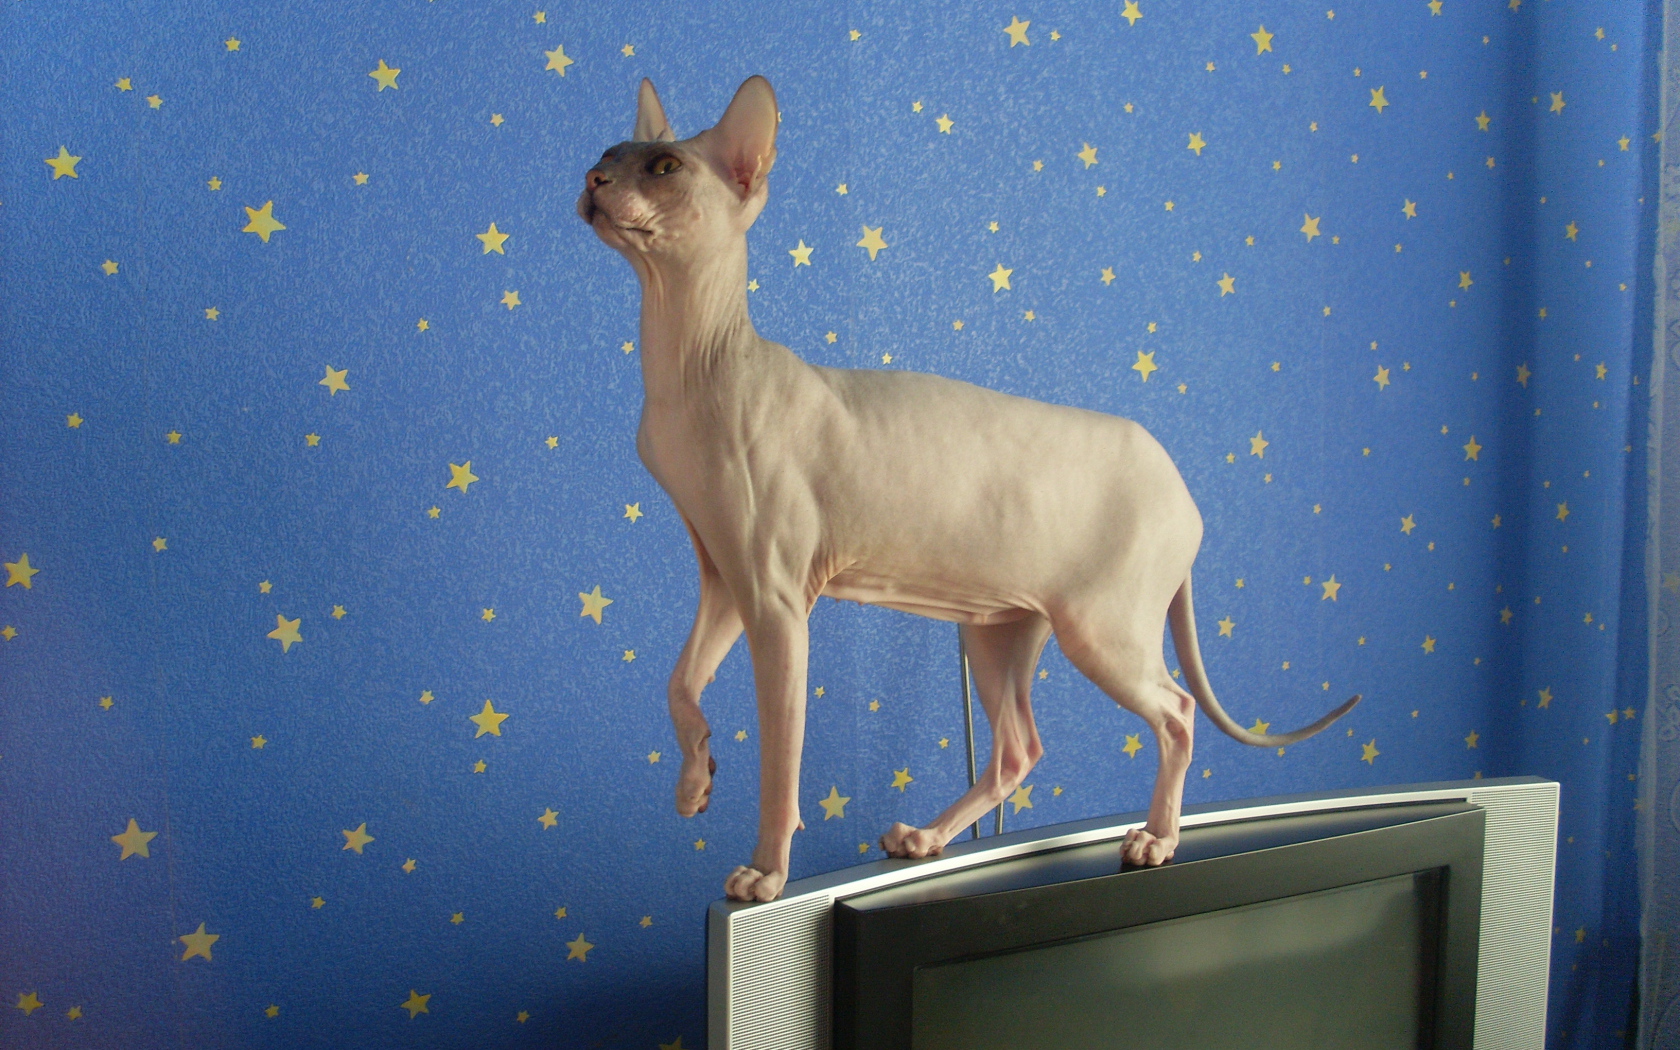 Кот сфинкс стоит на телевизоре